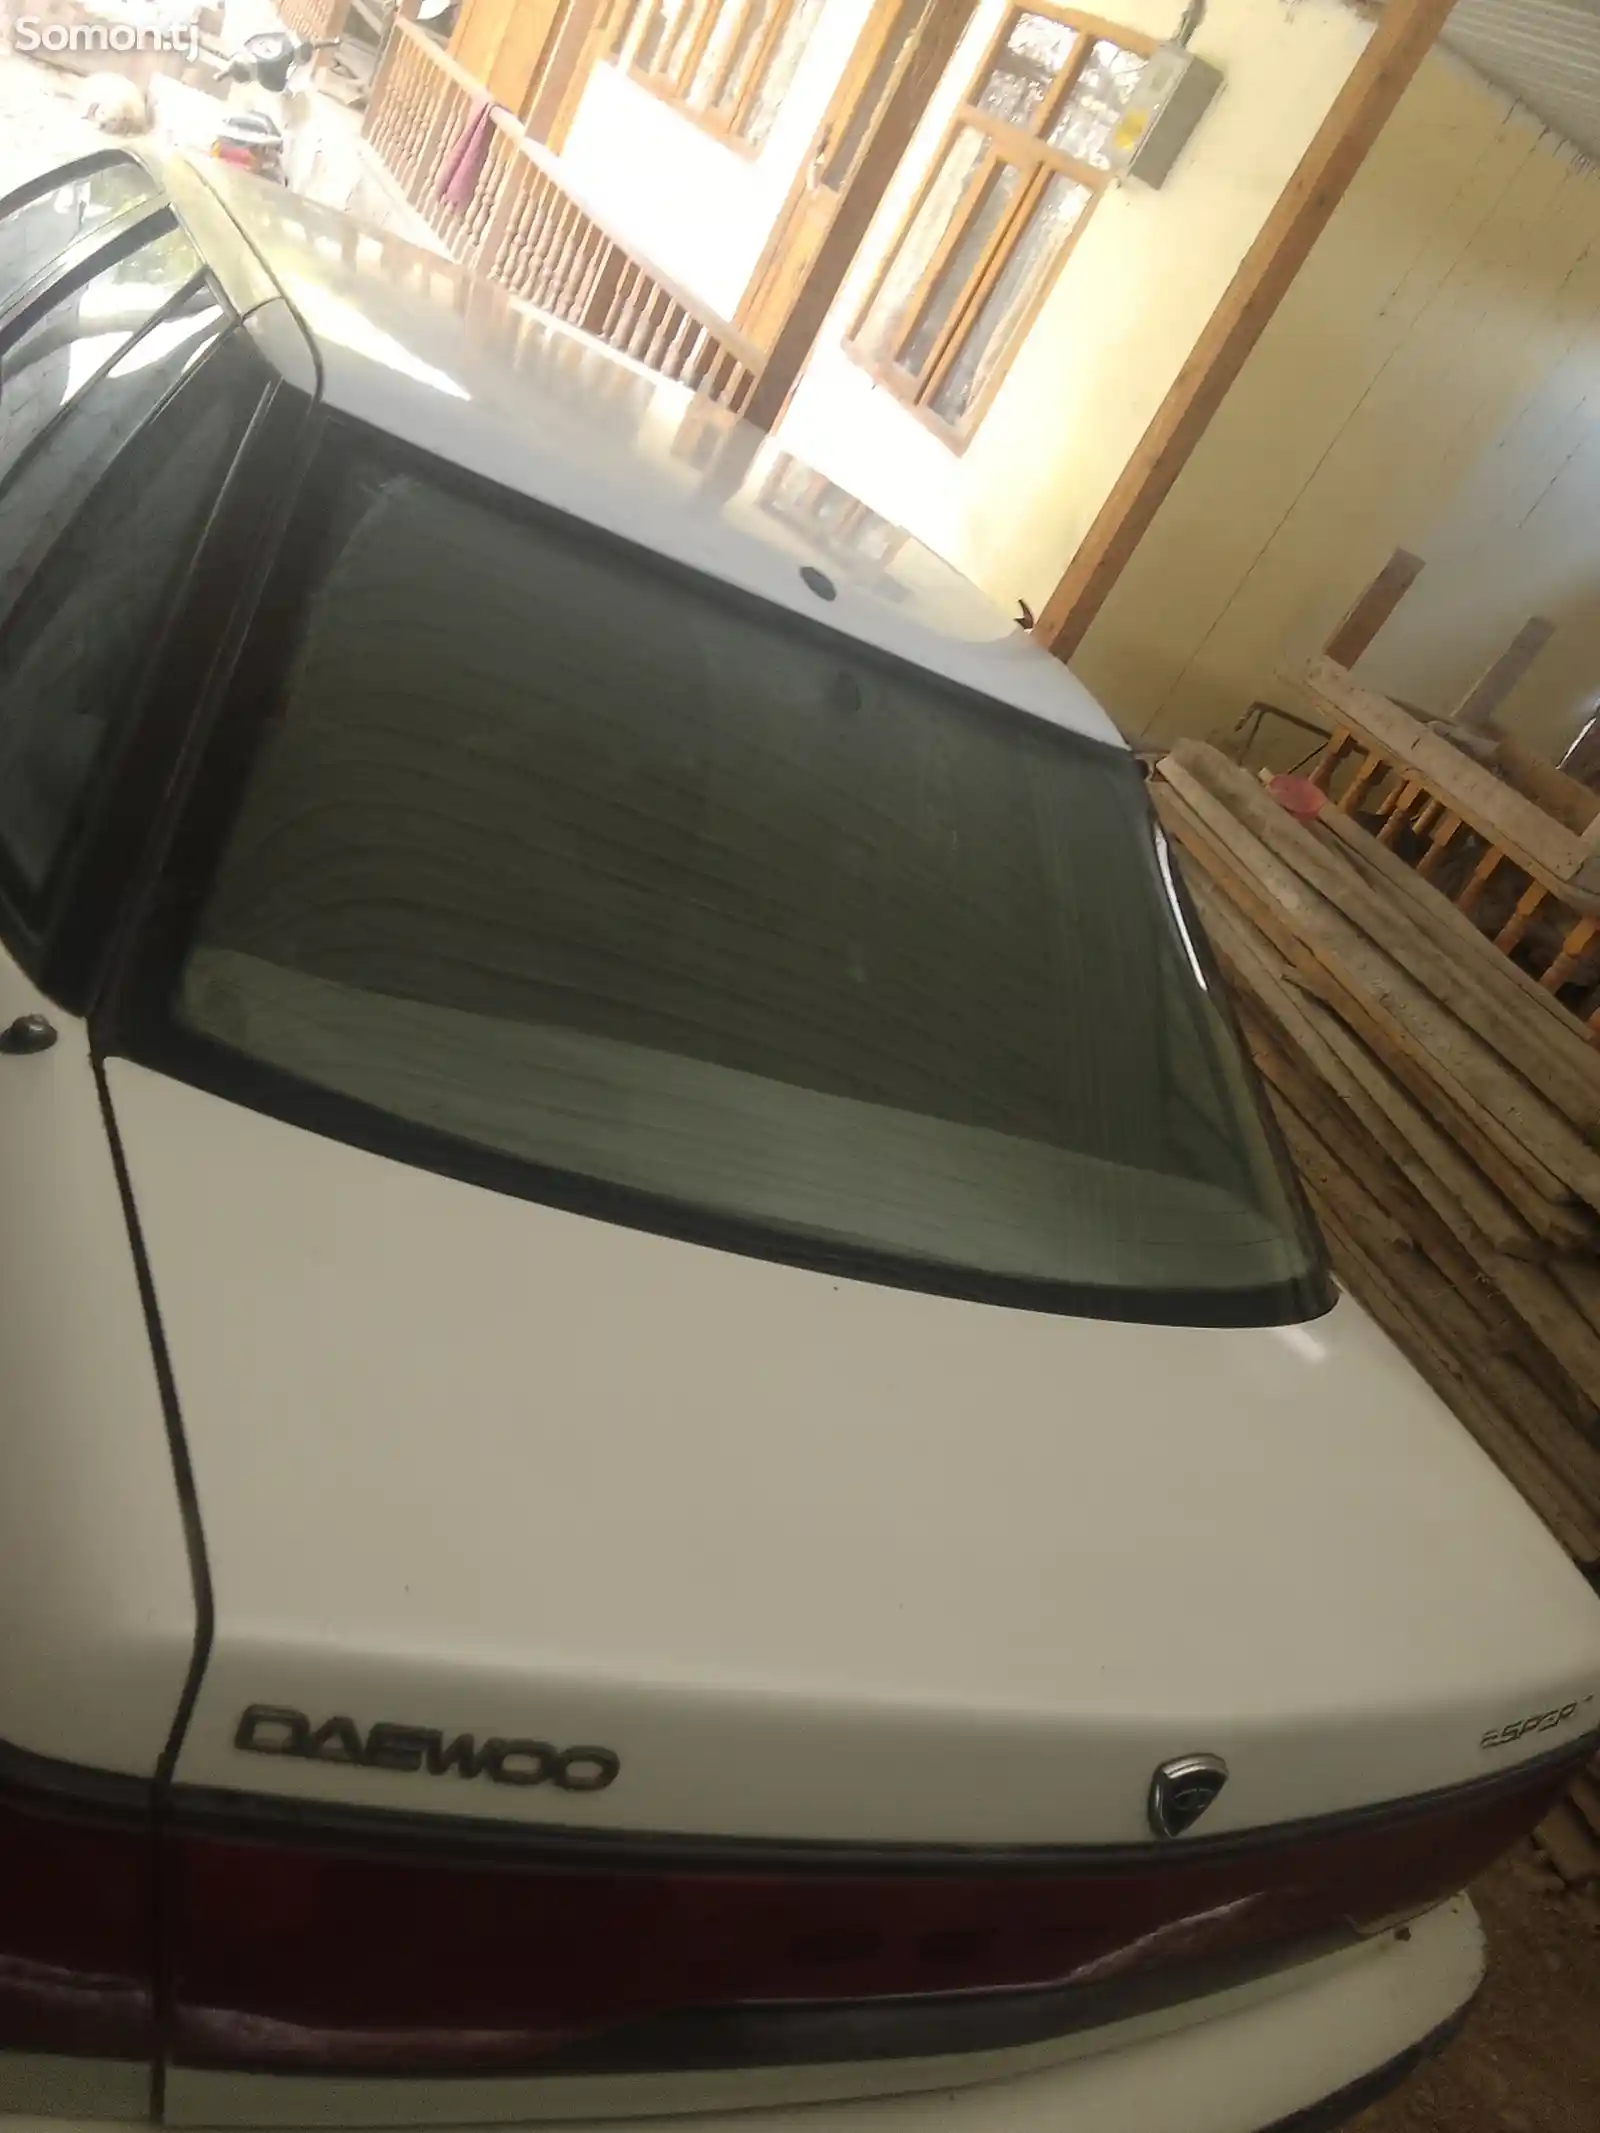 Daewoo Espero, 1995-6